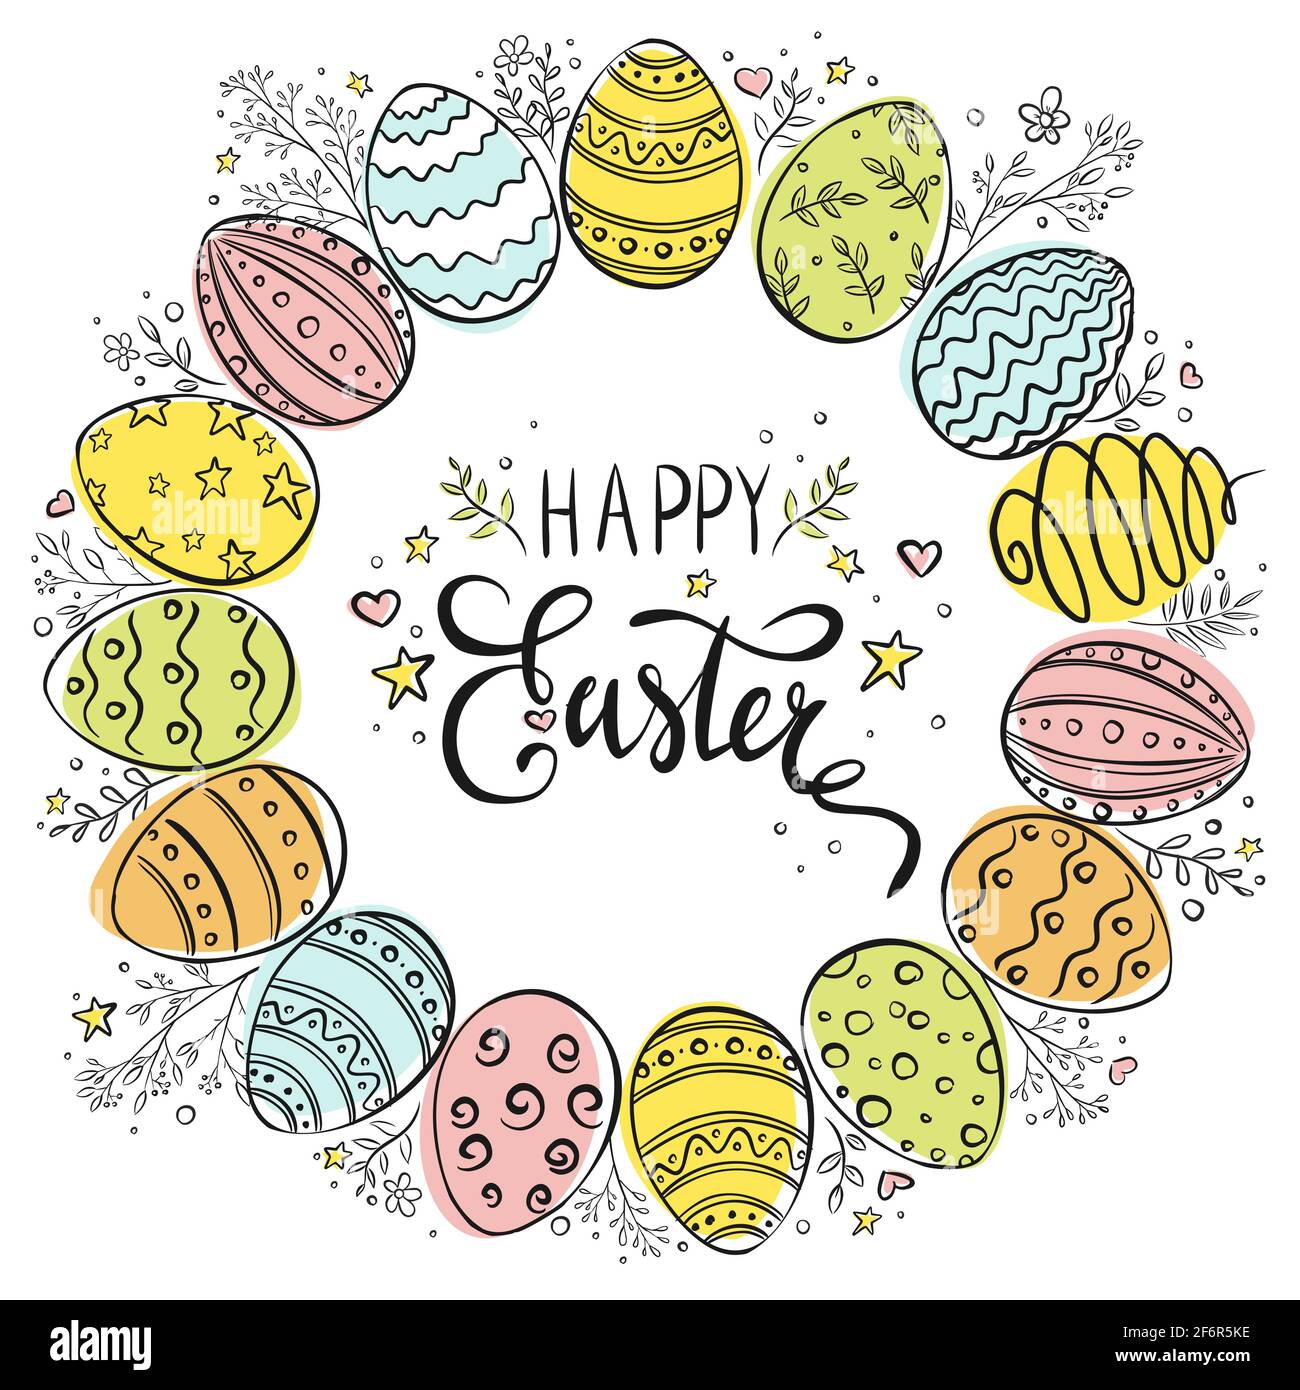 Buona Pasqua mano disegnata corona su sfondo bianco. Cornice decorativa con  doodle fatta di uova di Pasqua ed elementi floreali. Linea colorata  ornamentale disegnando felici uova di Pasqua in una forma circolare,